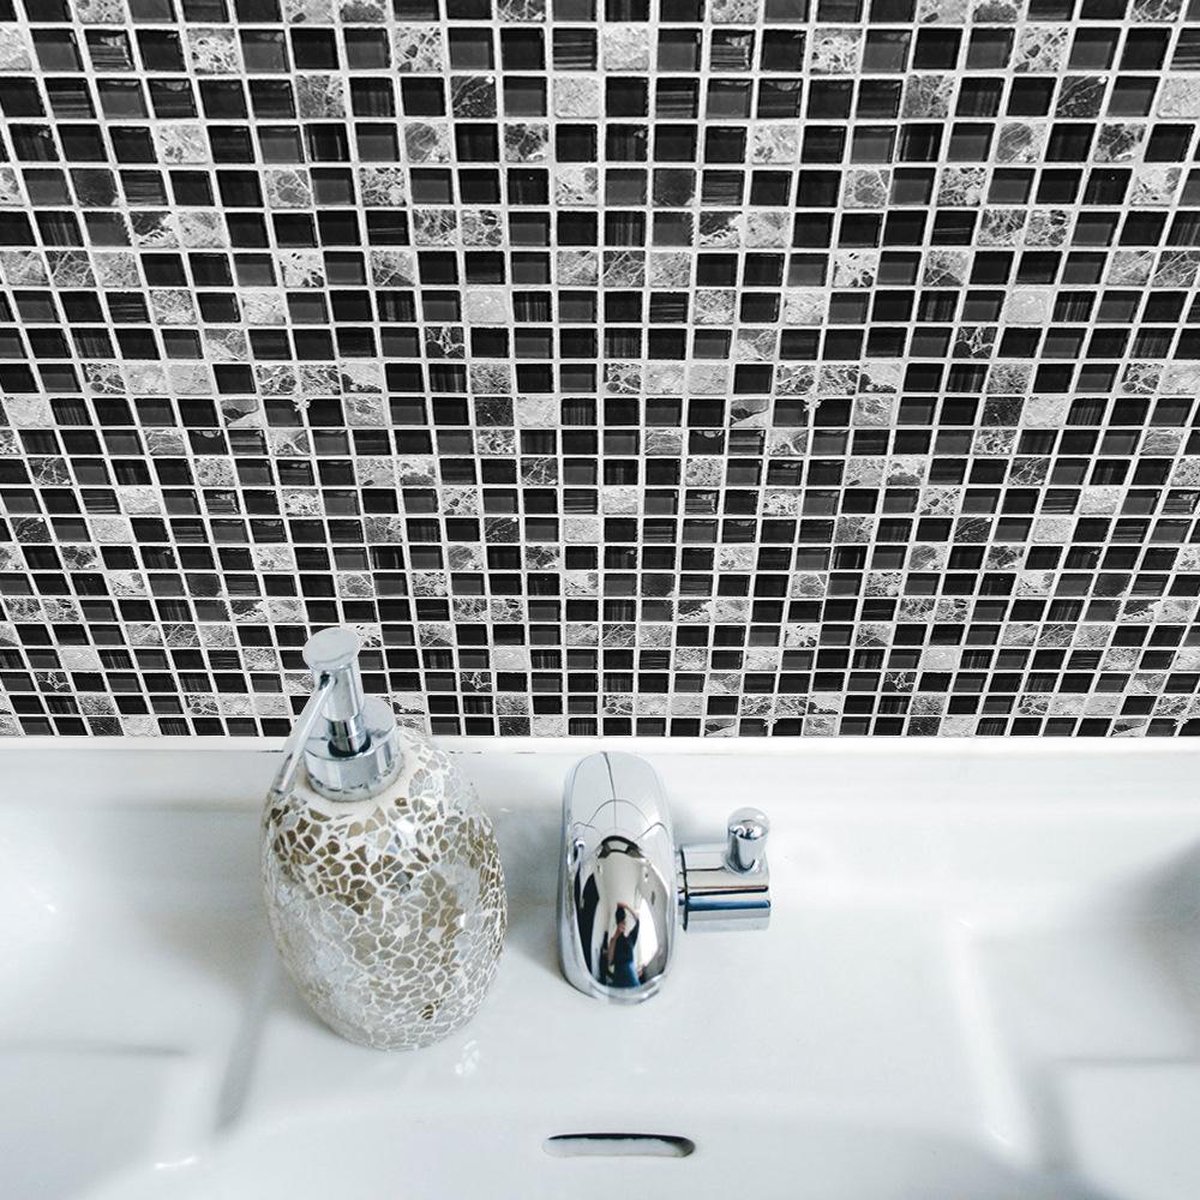 Купить мозаику для ванной plitka mosaica ru. Самоклеющаяся мозаика для ванной. Мозаичная плитка для ванной. Самоклеющаяся мозаичная плитка для ванной. Керамическая мозаика для ванной.